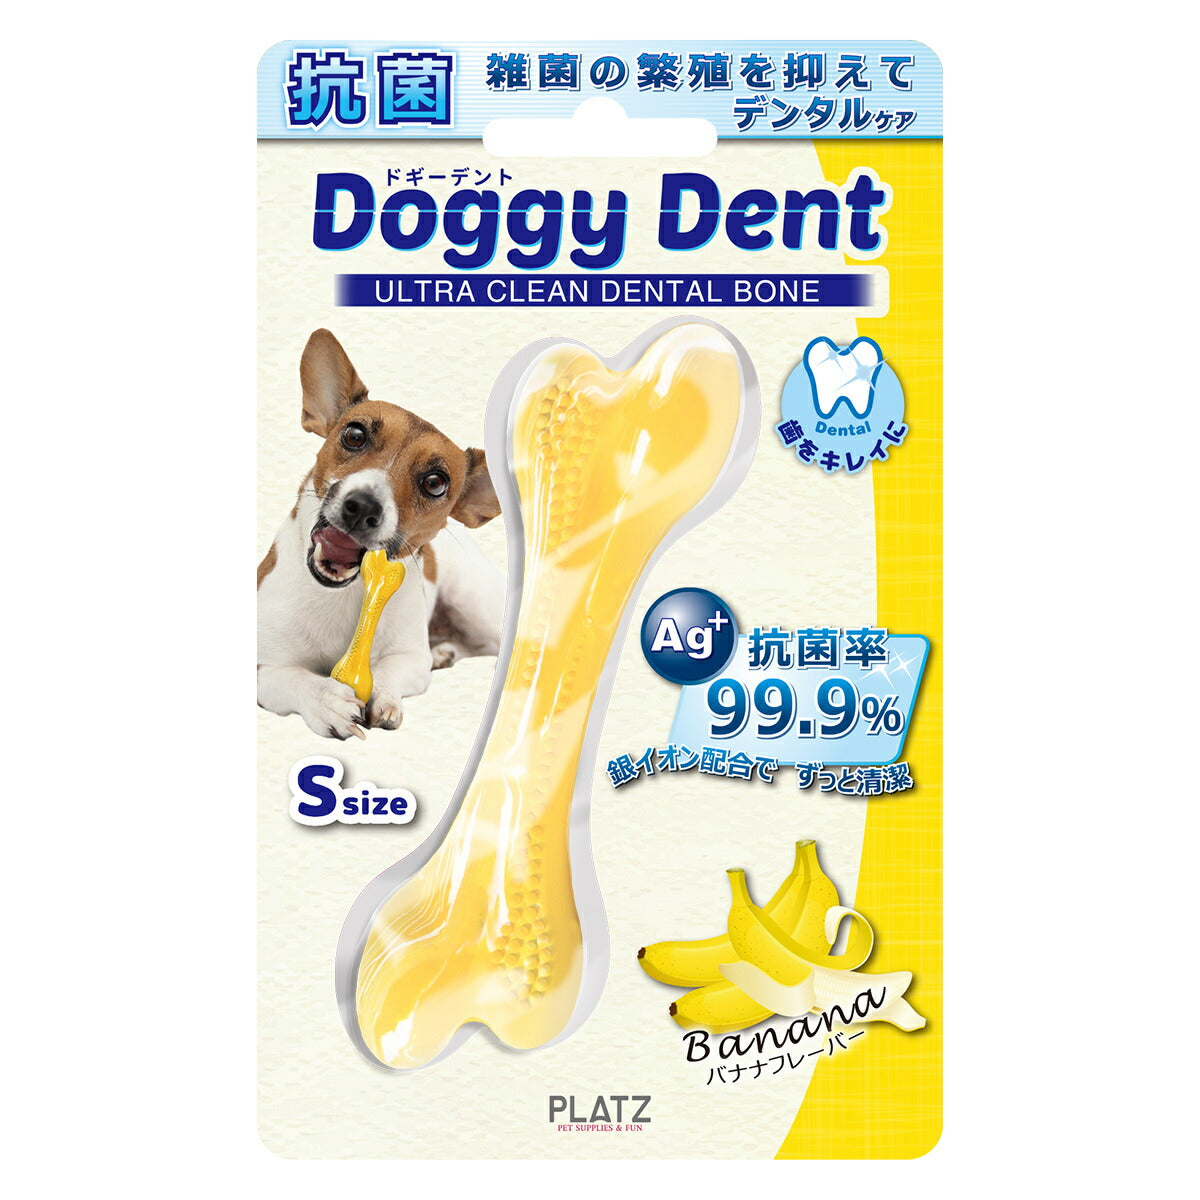 PLATZ ドギーデント バナナ S 犬 おもちゃ 骨型 噛む デンタルトイ ラバー 銀イオン 抗菌